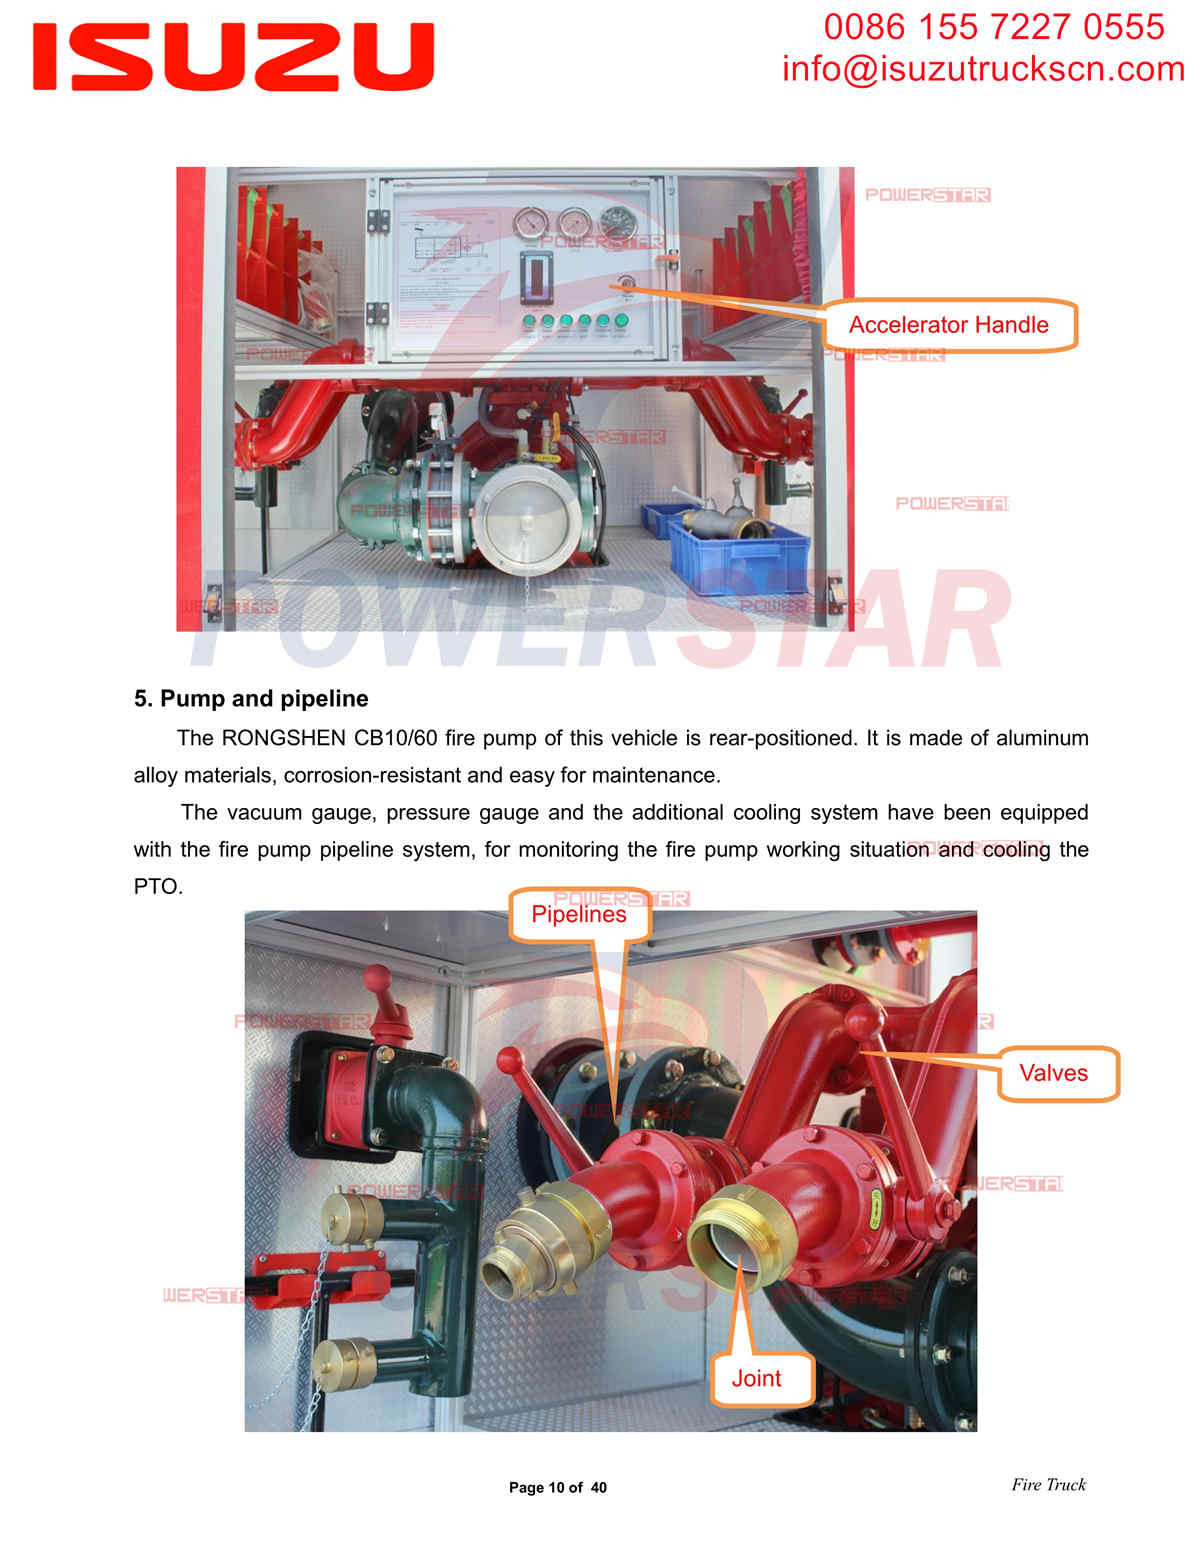 Панель управления пожарными машинами Isuzu